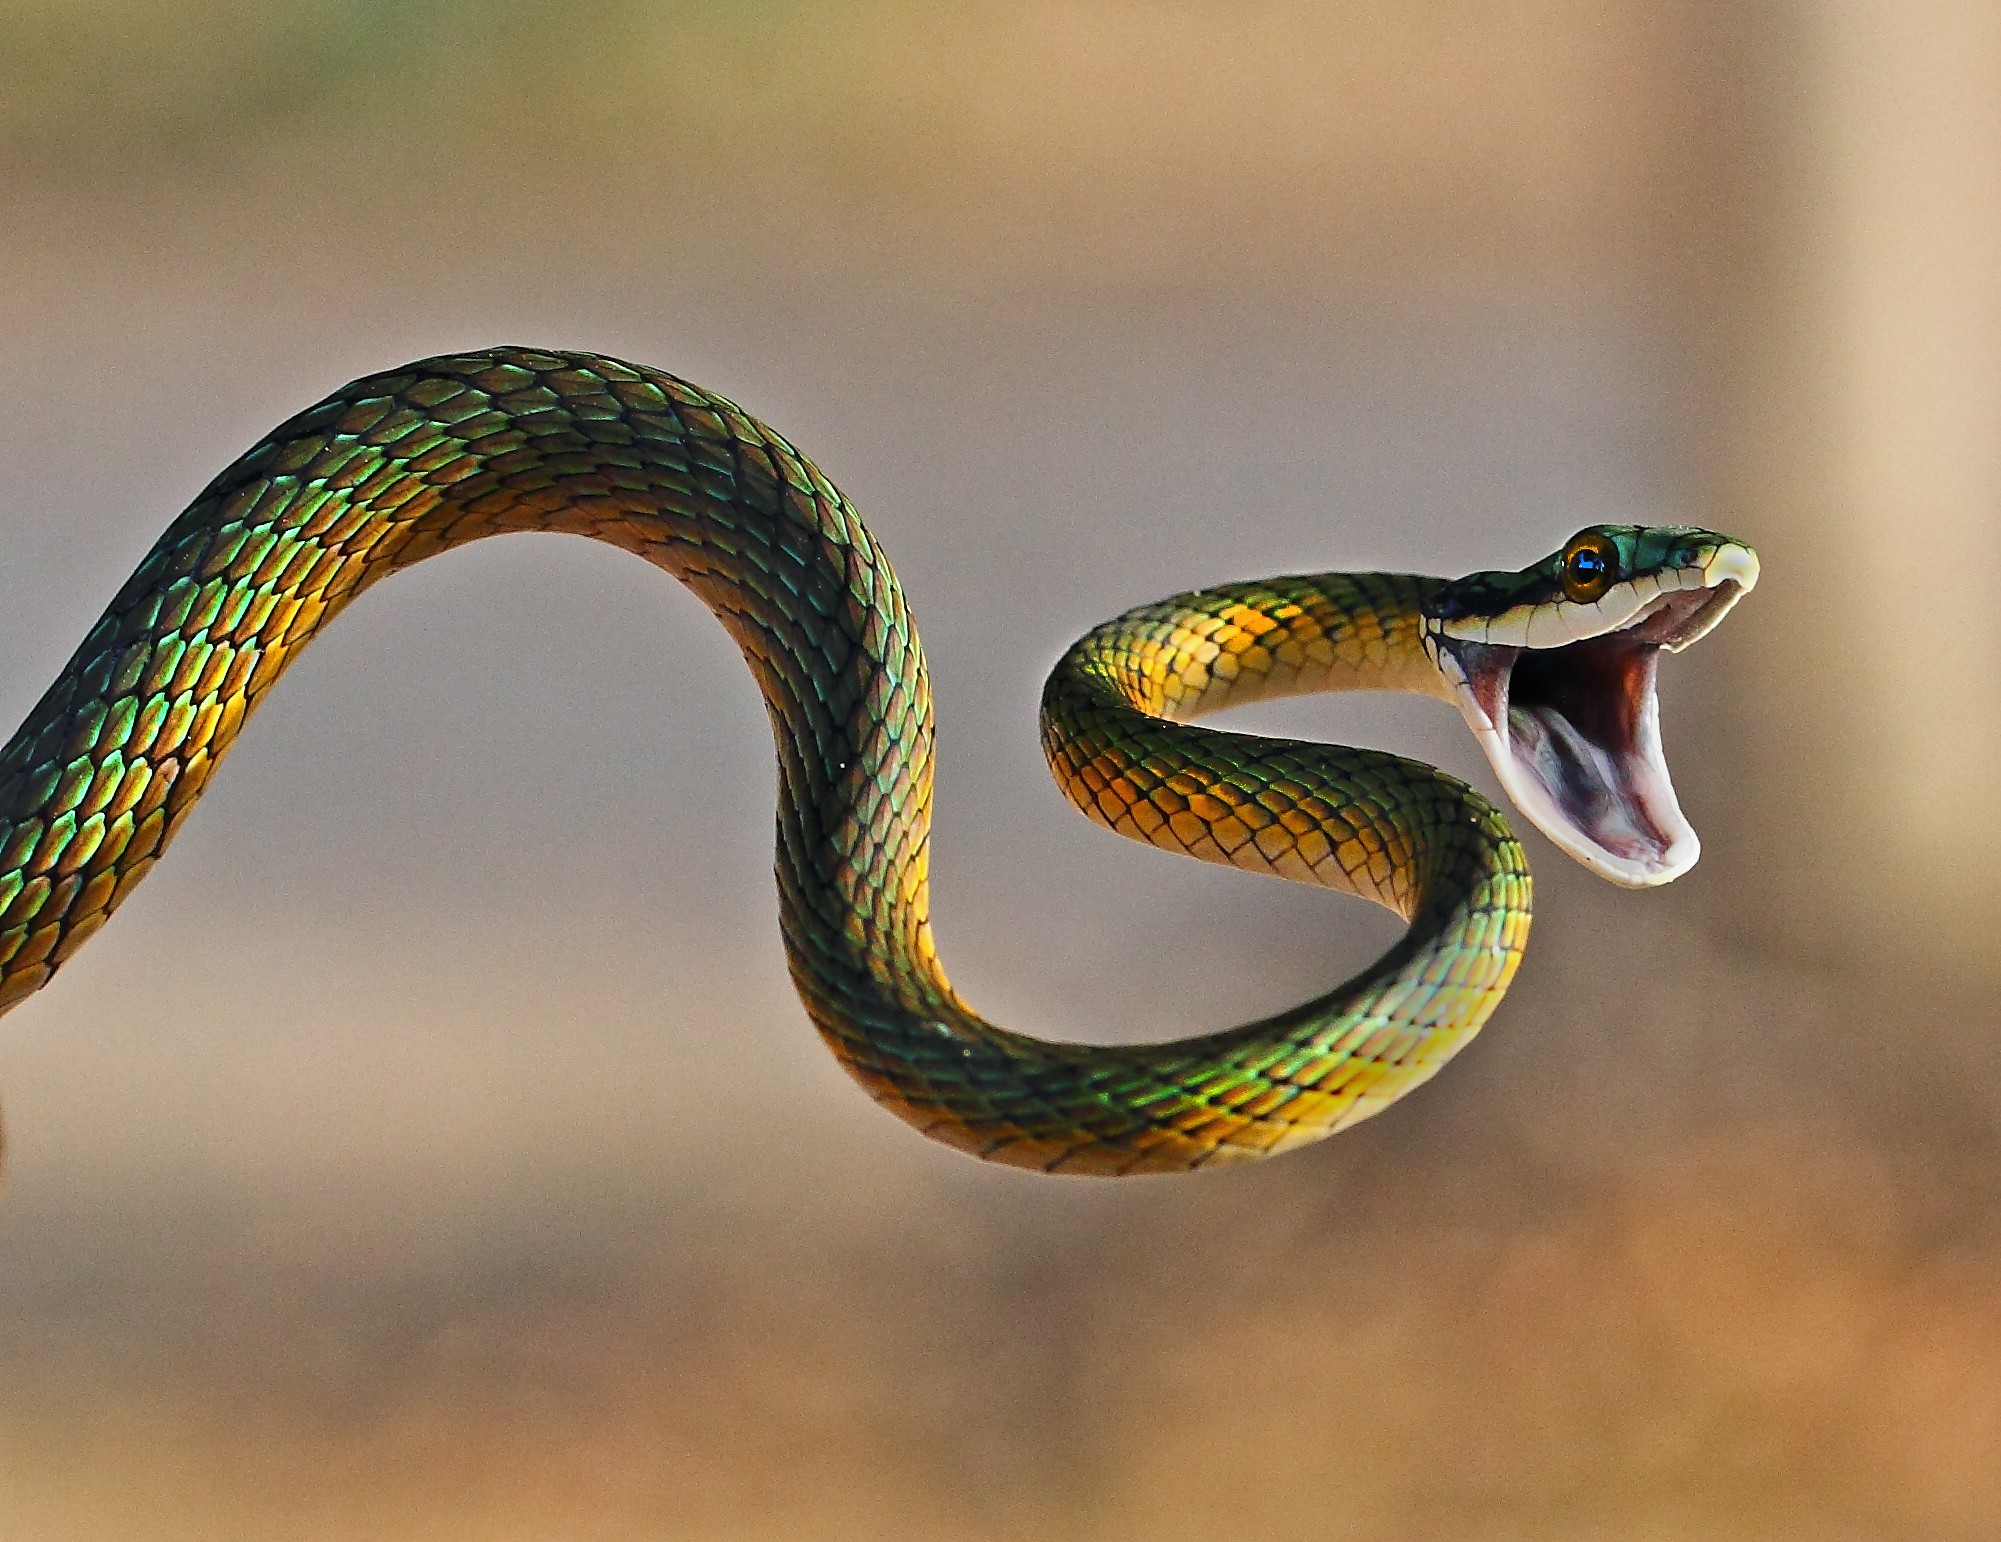 Segundo especialistas, algumas serpentes podem 